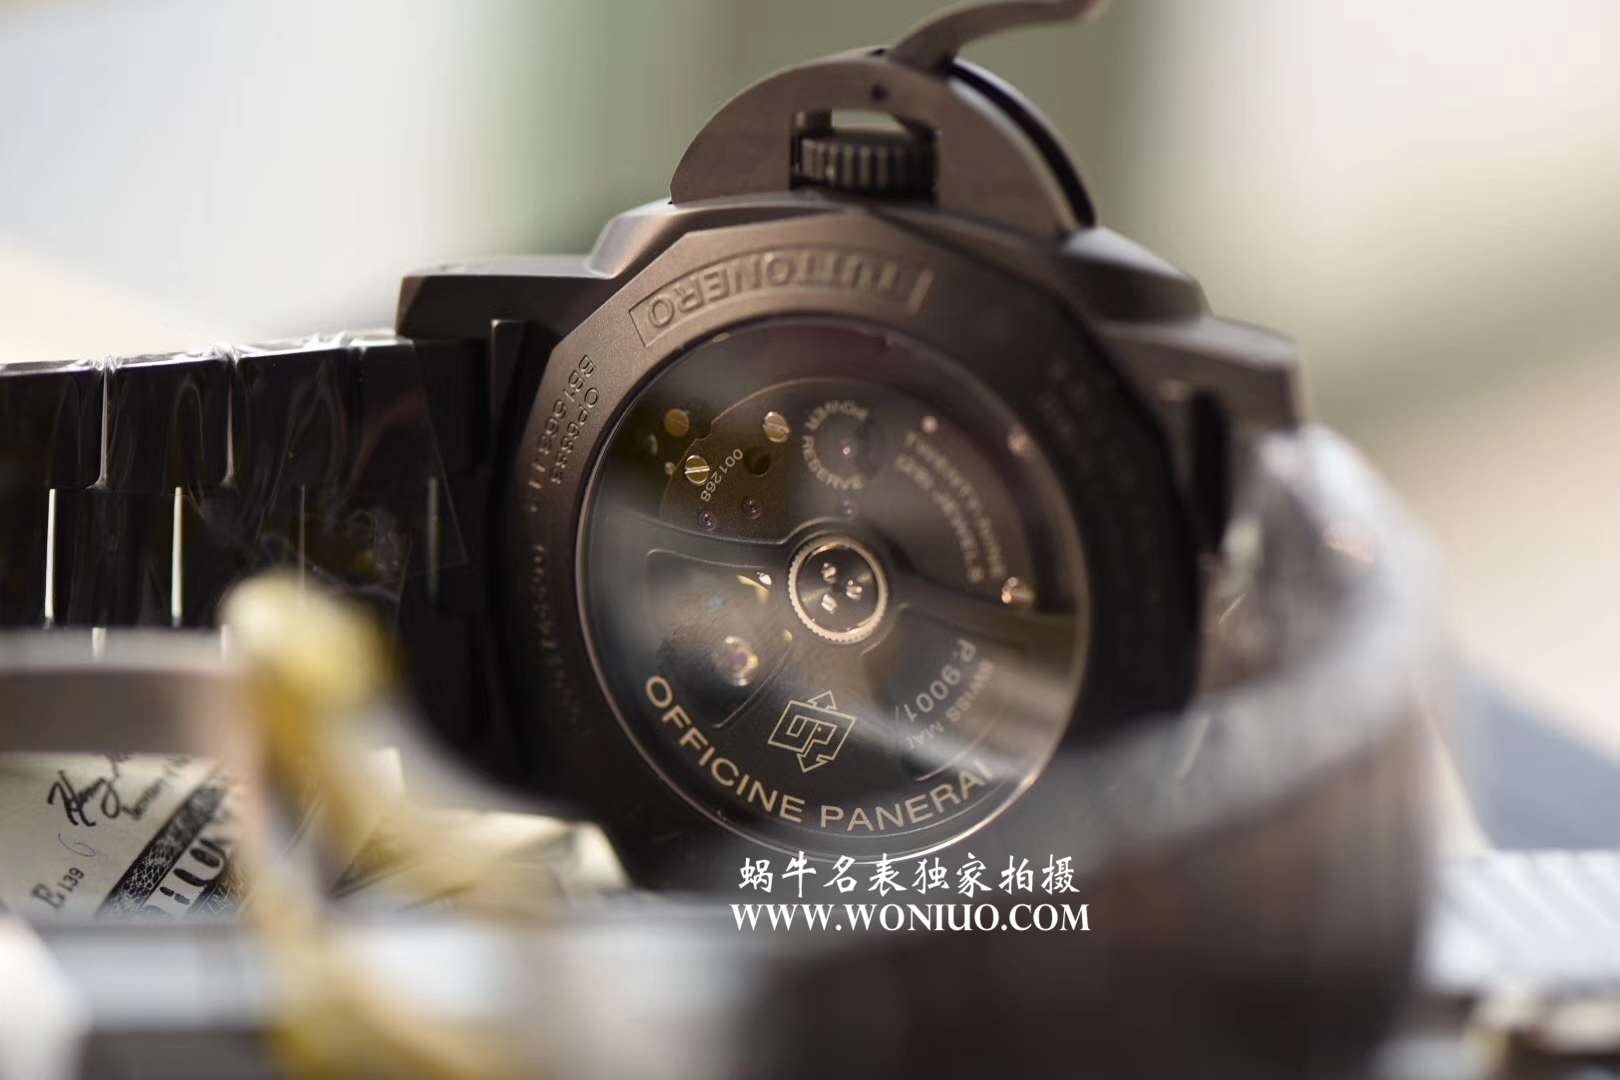 【视频评测VS一比一超A高仿手表】沛纳海LUMINOR 1950系列PAM00438全陶瓷腕表 / VSBFPAM00438